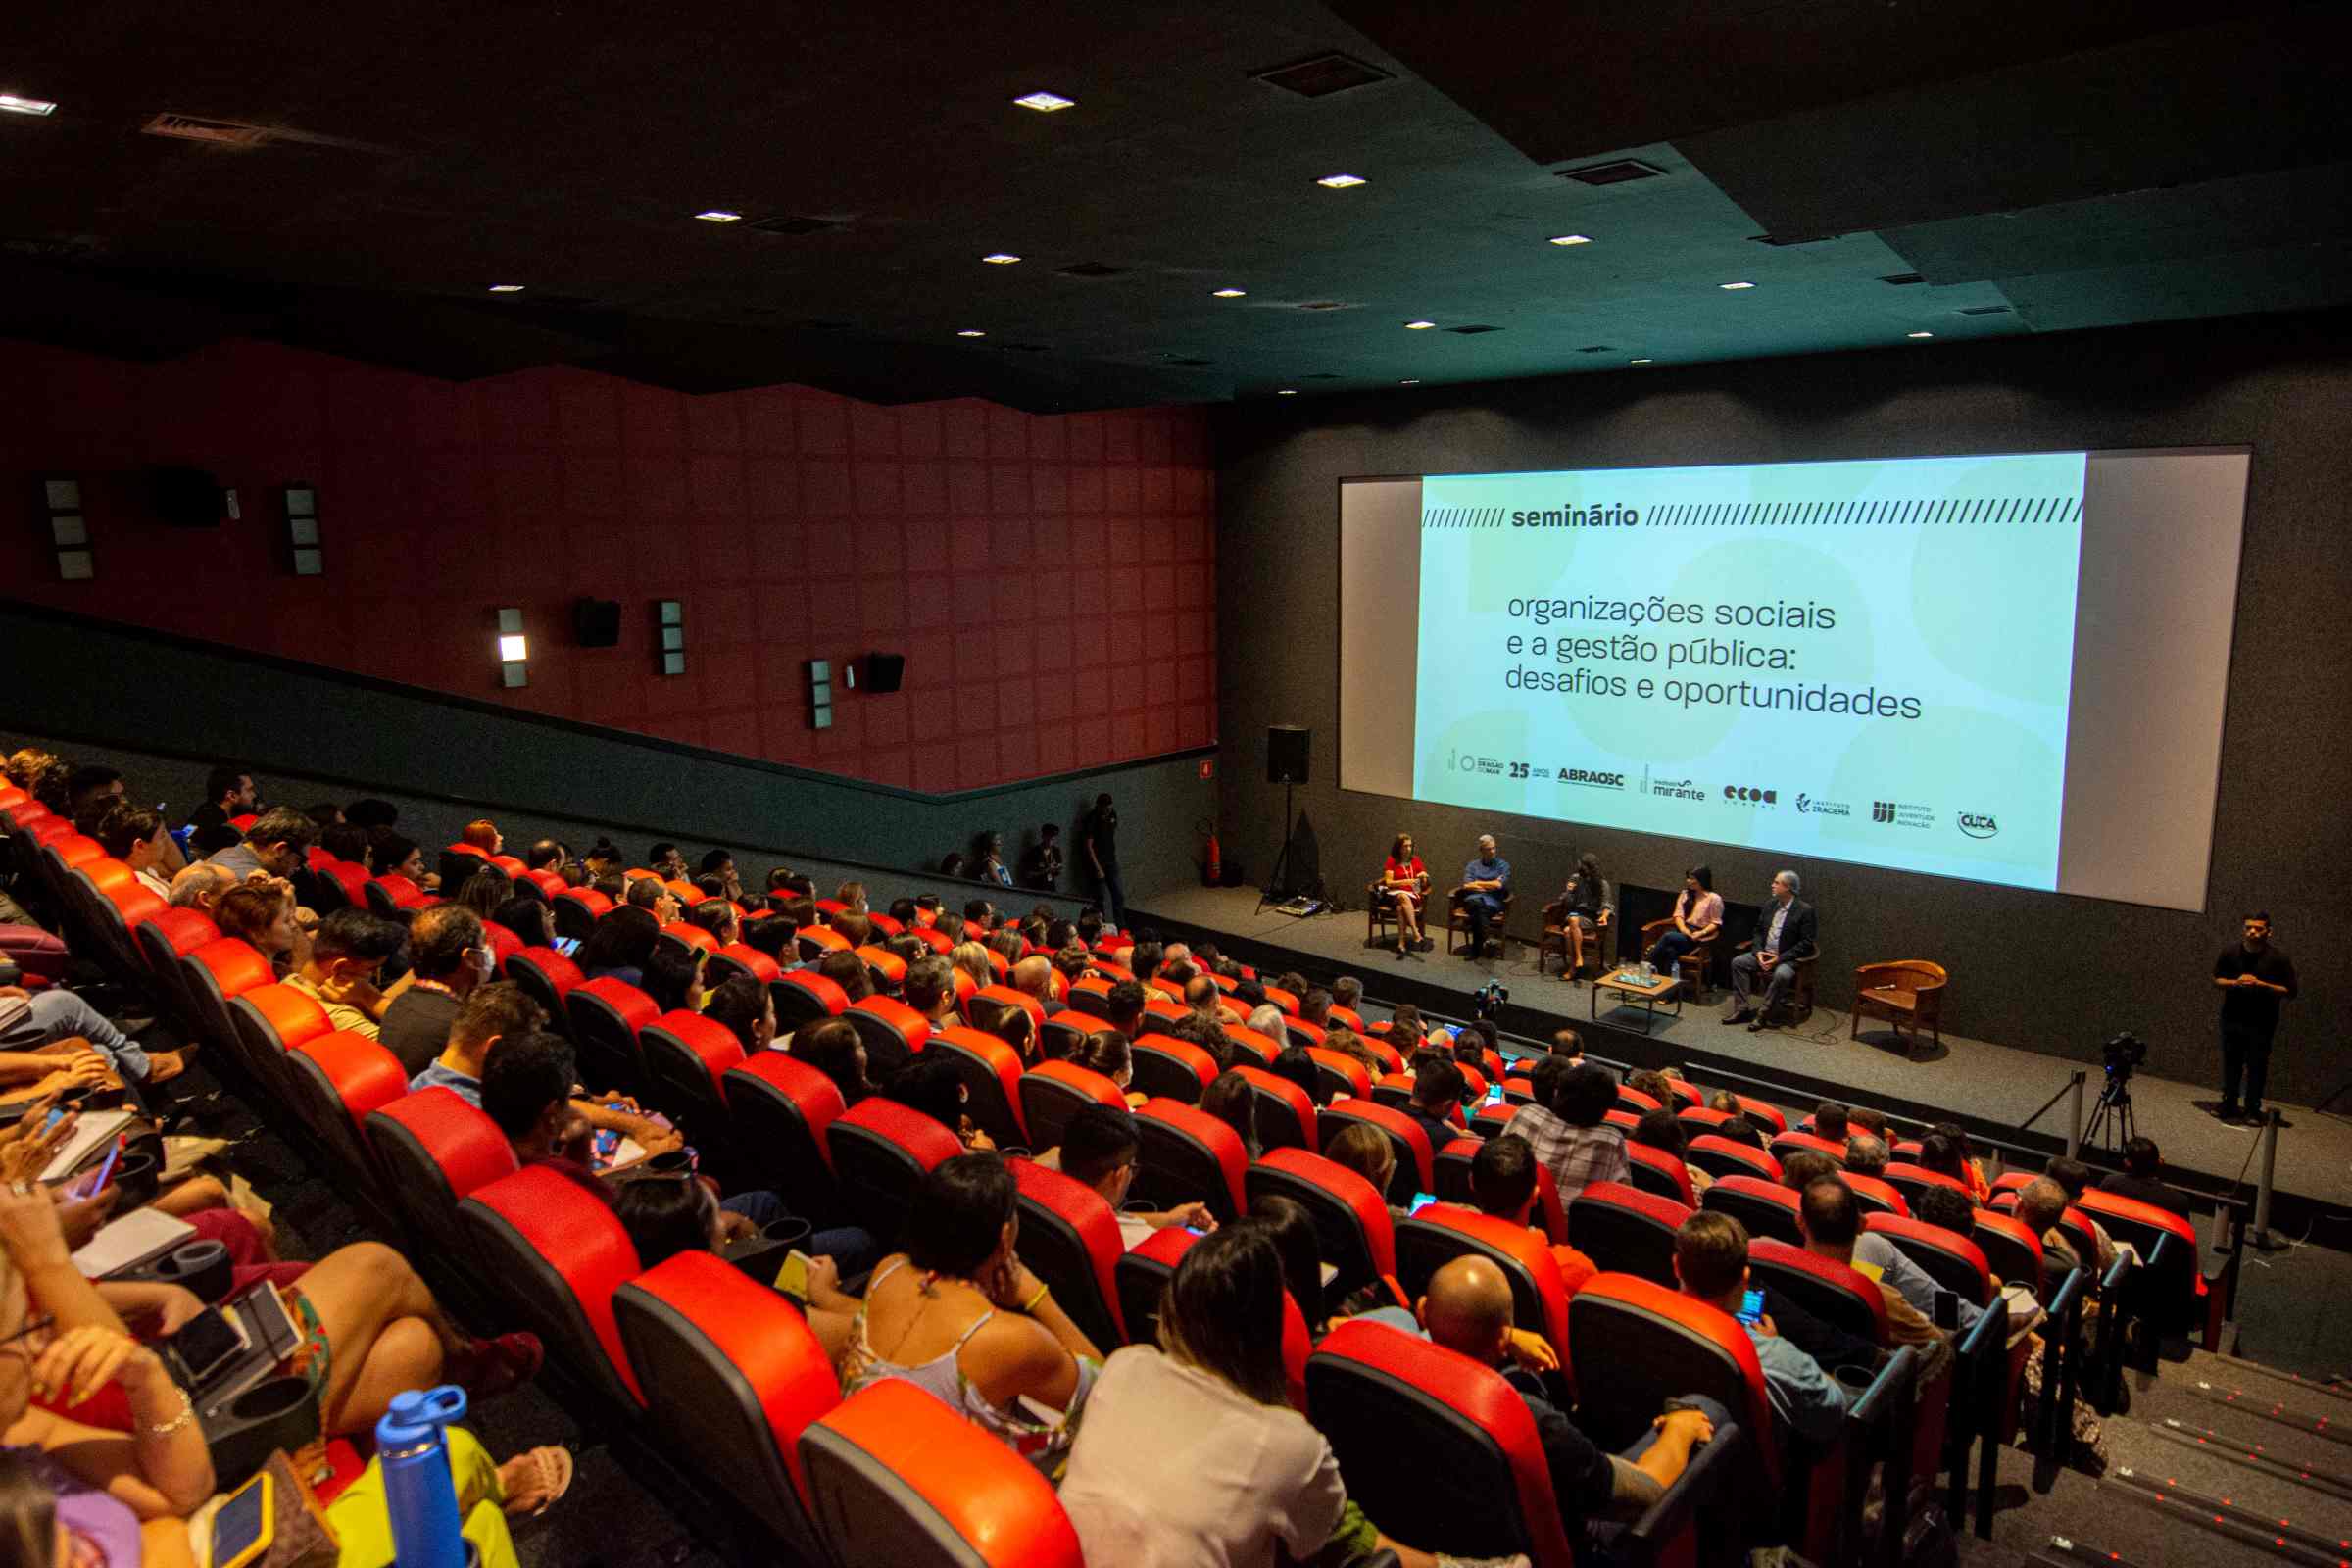 Em um cinema de mais de 100 lugares, lotado, o público est sentado em cadeiras ´vermelhas e à frente os palestrantes estão sentados abaixo da tela de exibição das apresentações.